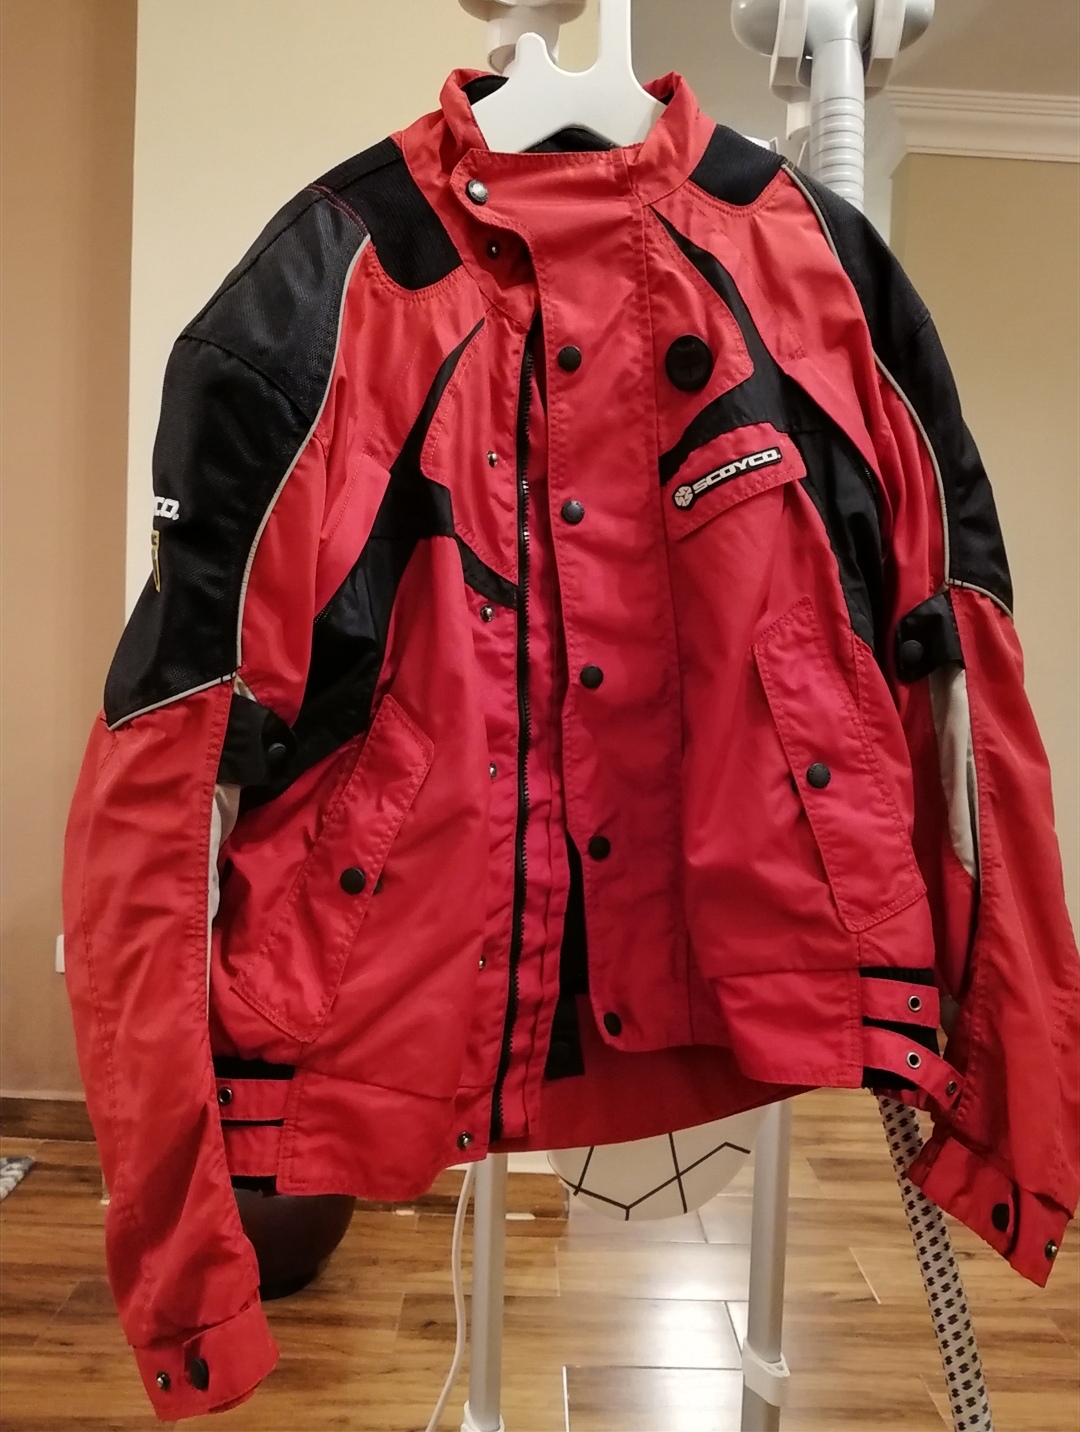 Scoyco  -  Jacket - Safety jacket